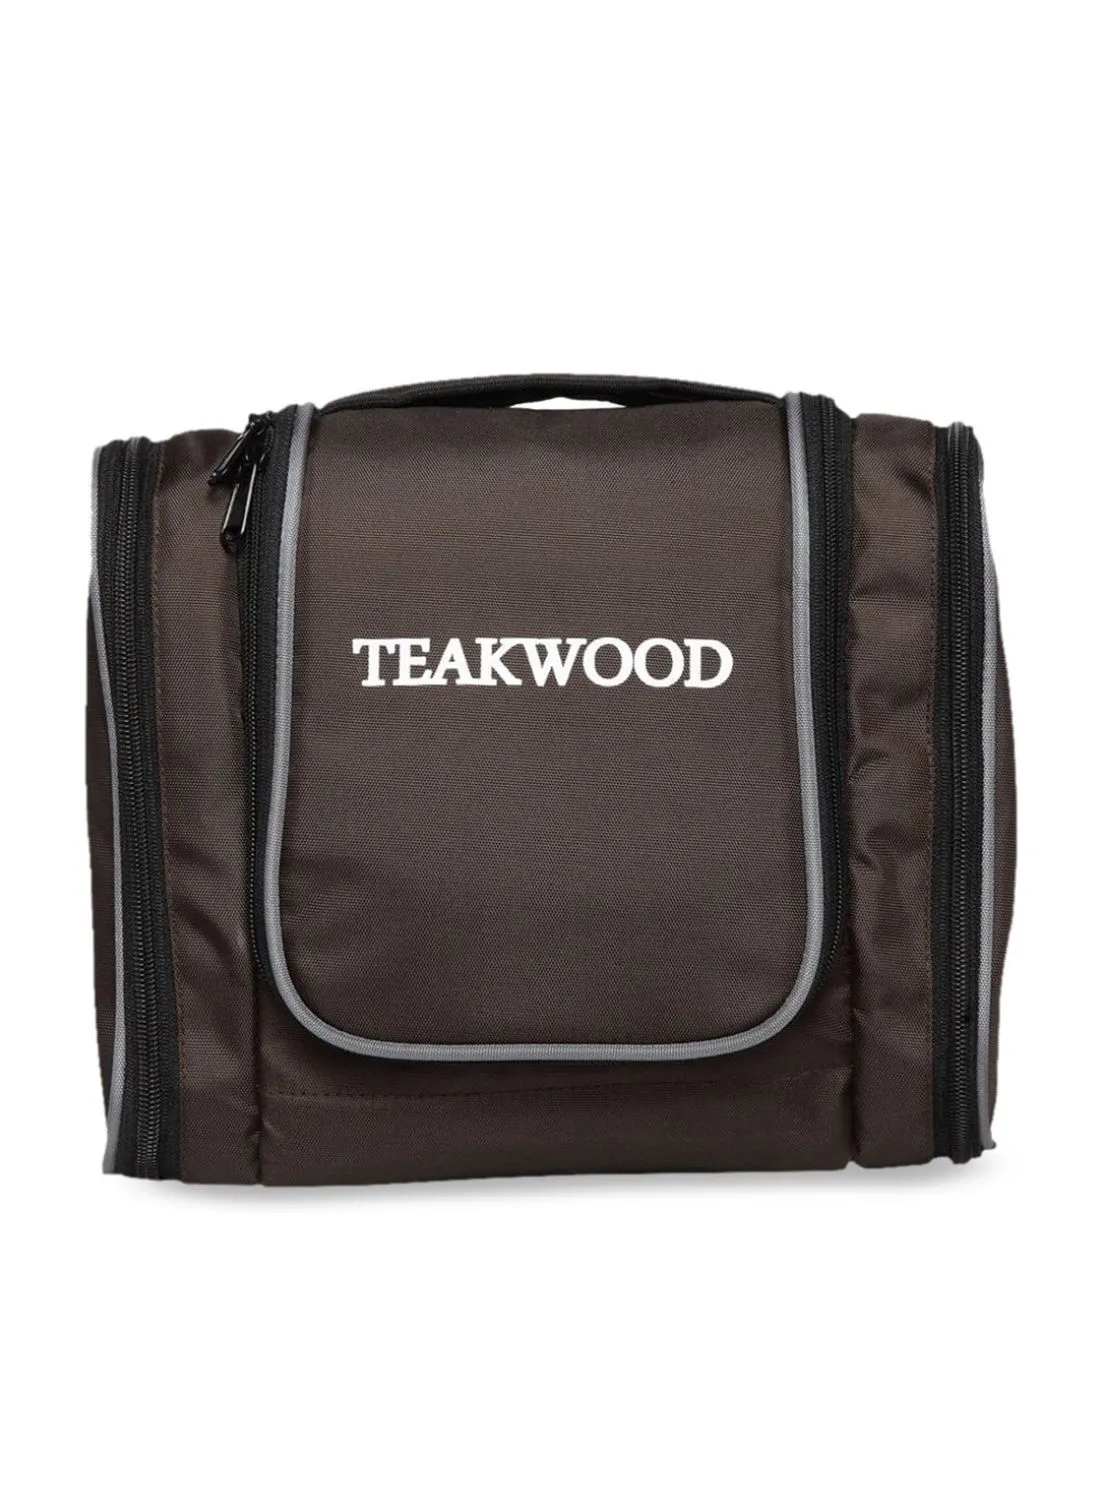 TEAKWOOD Logo Detail Toiletry Bag Brown